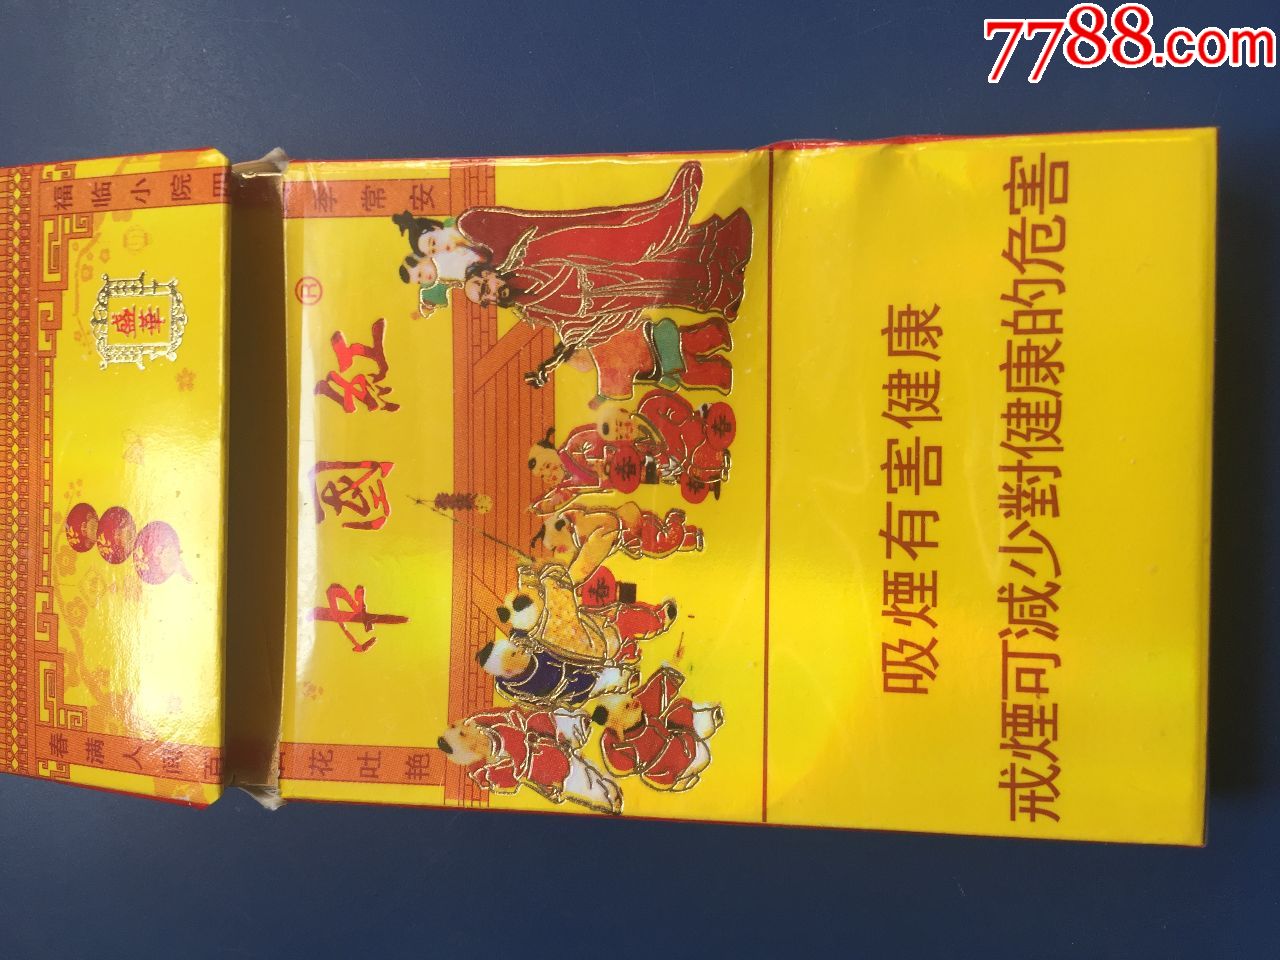 港版中国红烟细支图片